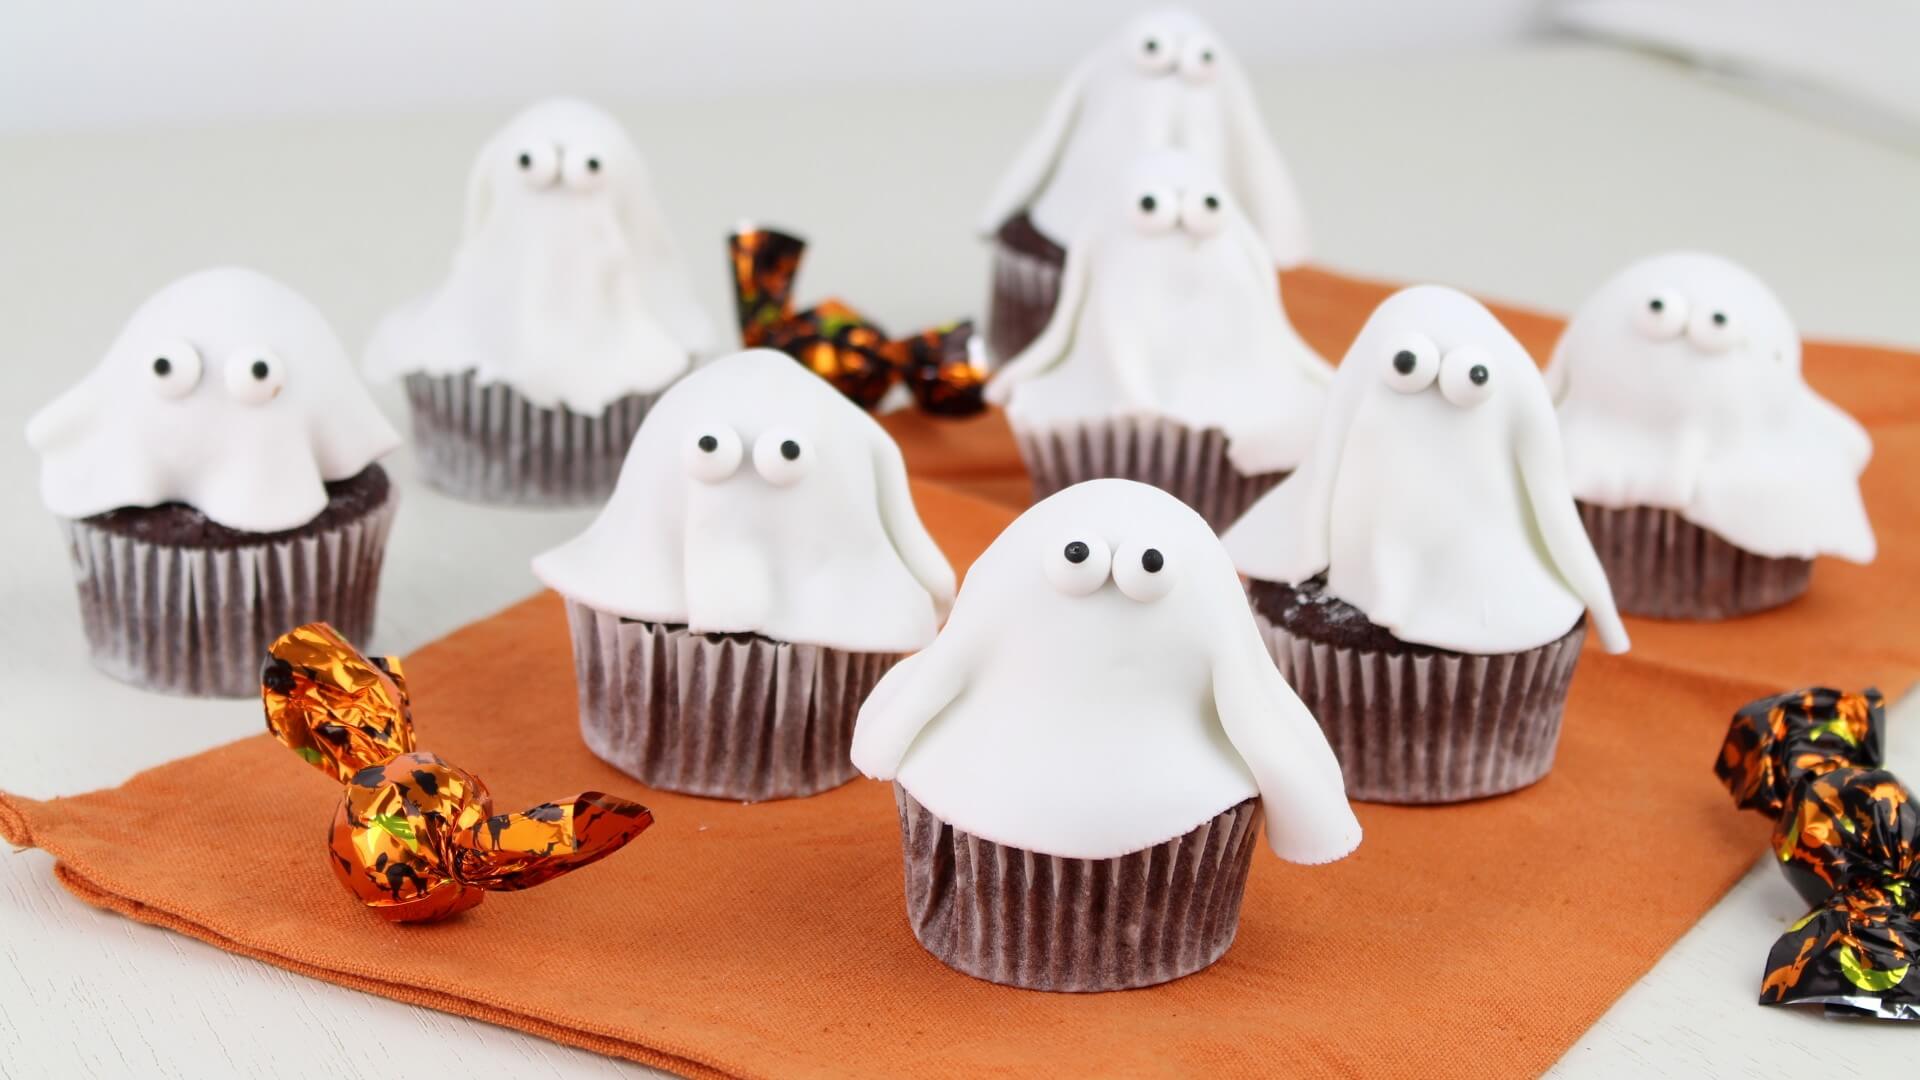 cupcakes fantasma halloween2 Cupcakes fantasma con Mambo para Halloween